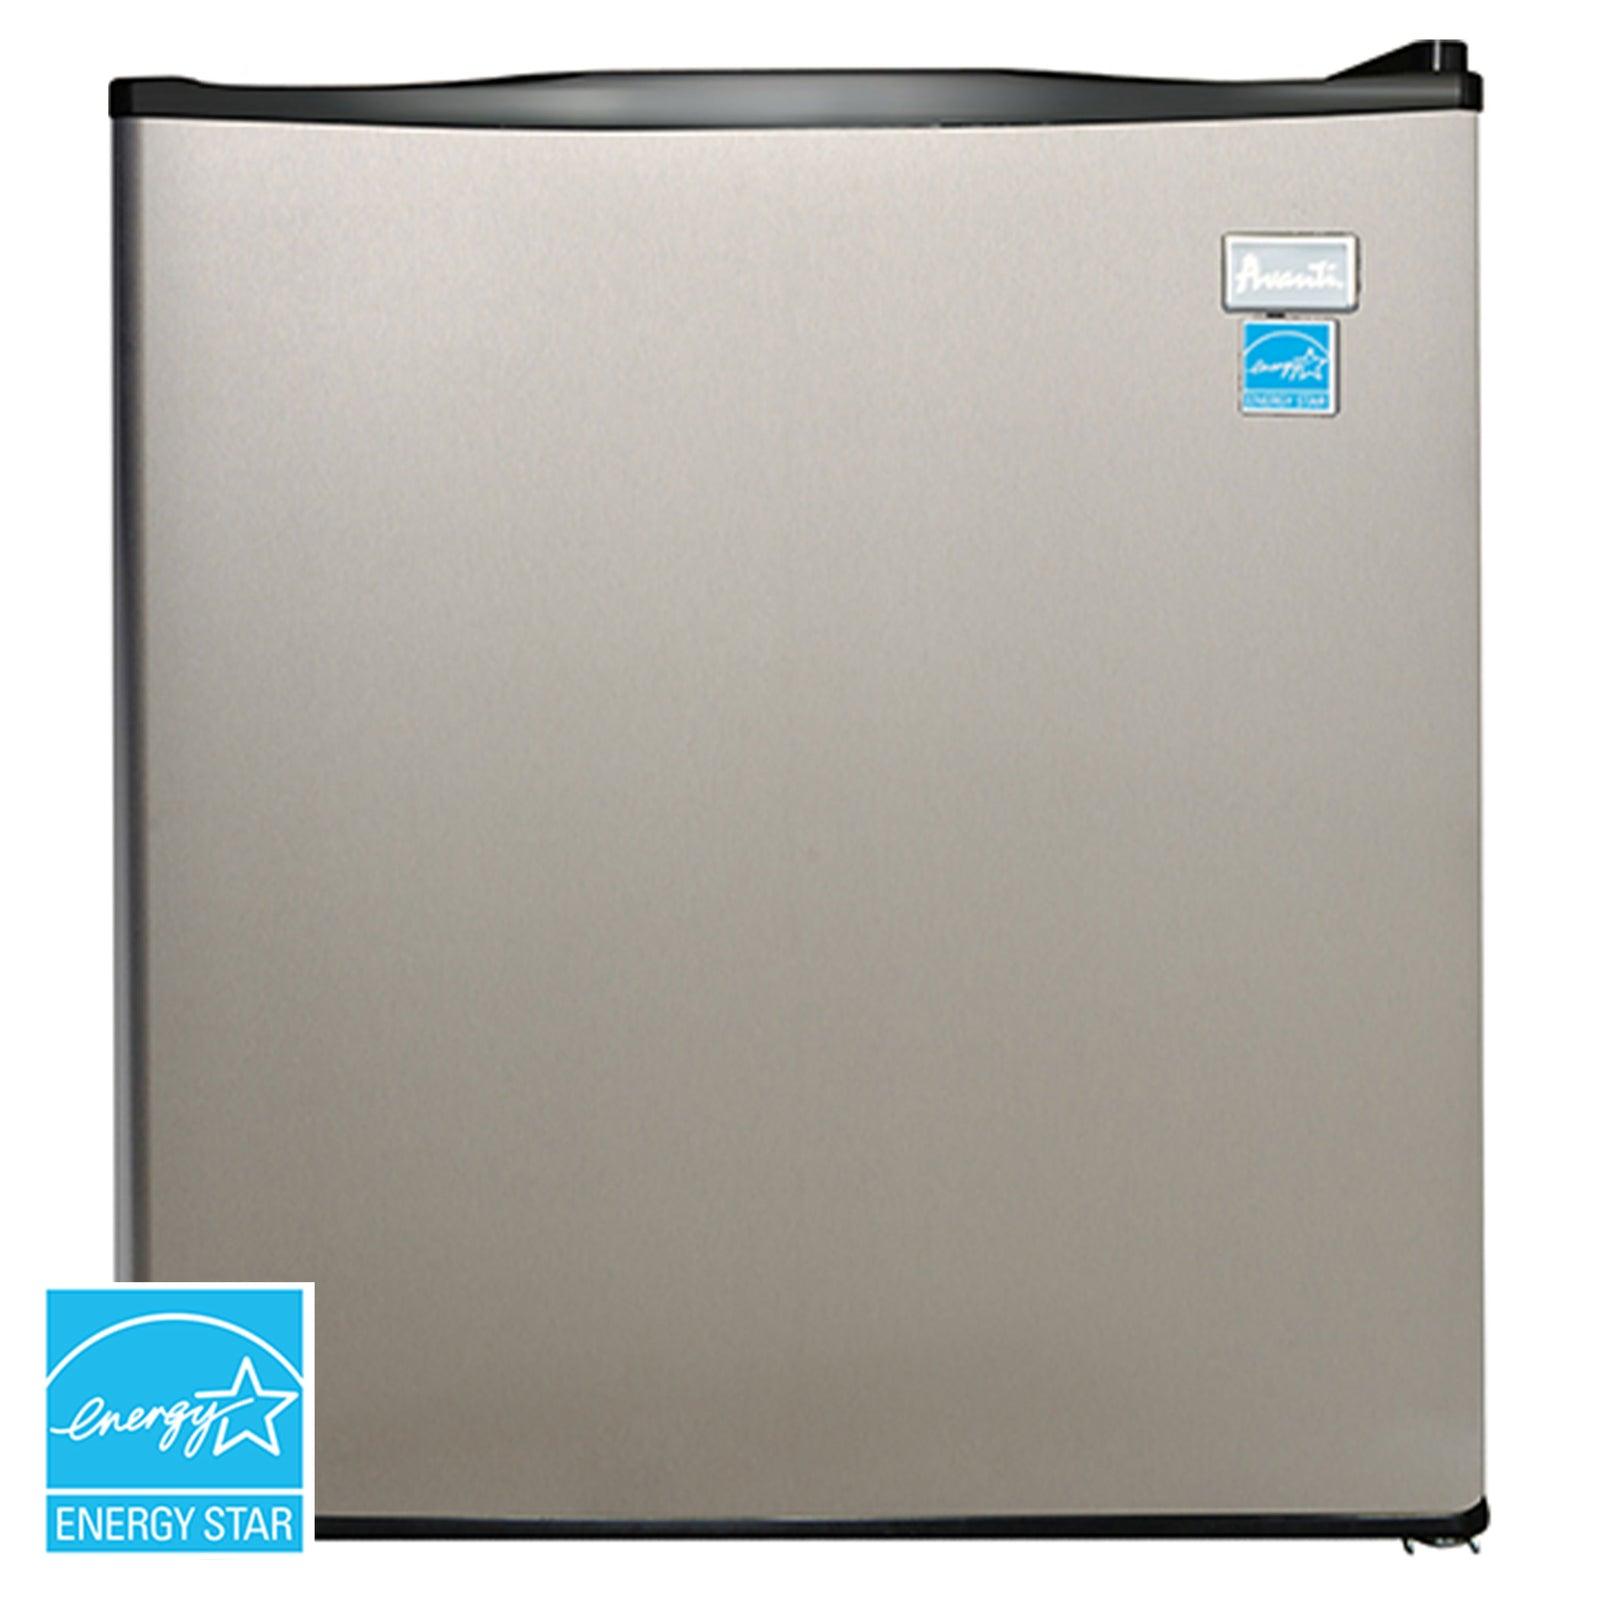 Avanti 1.7 cu. ft. Compact Refrigerator - White / 1.7 cu. ft.